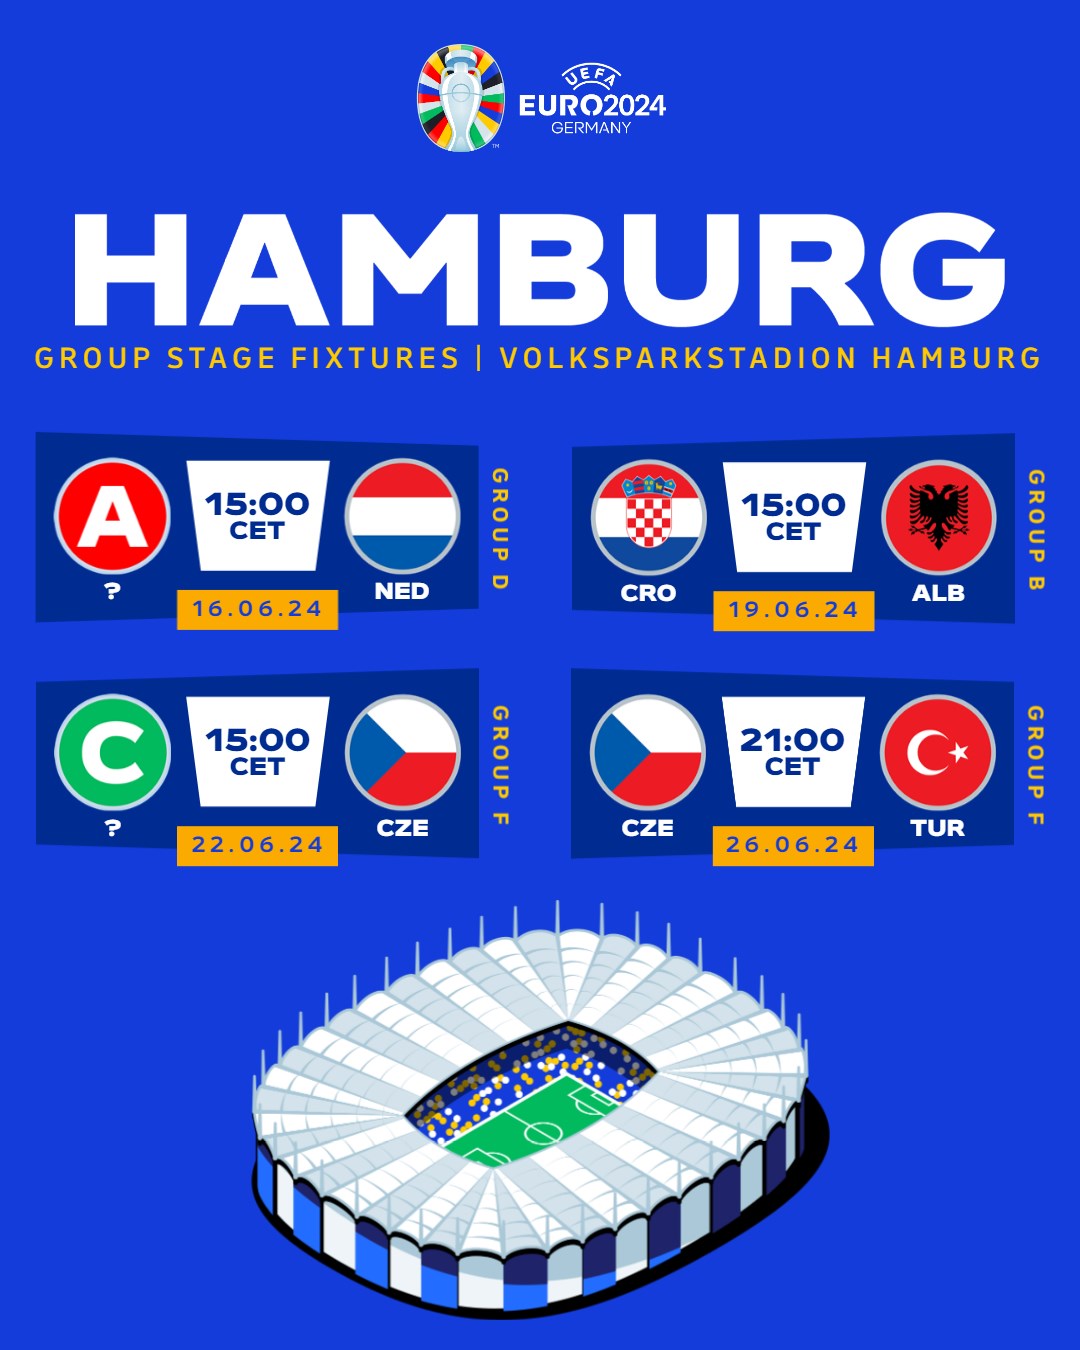 Spielplan EURO 2024 in Hamburg